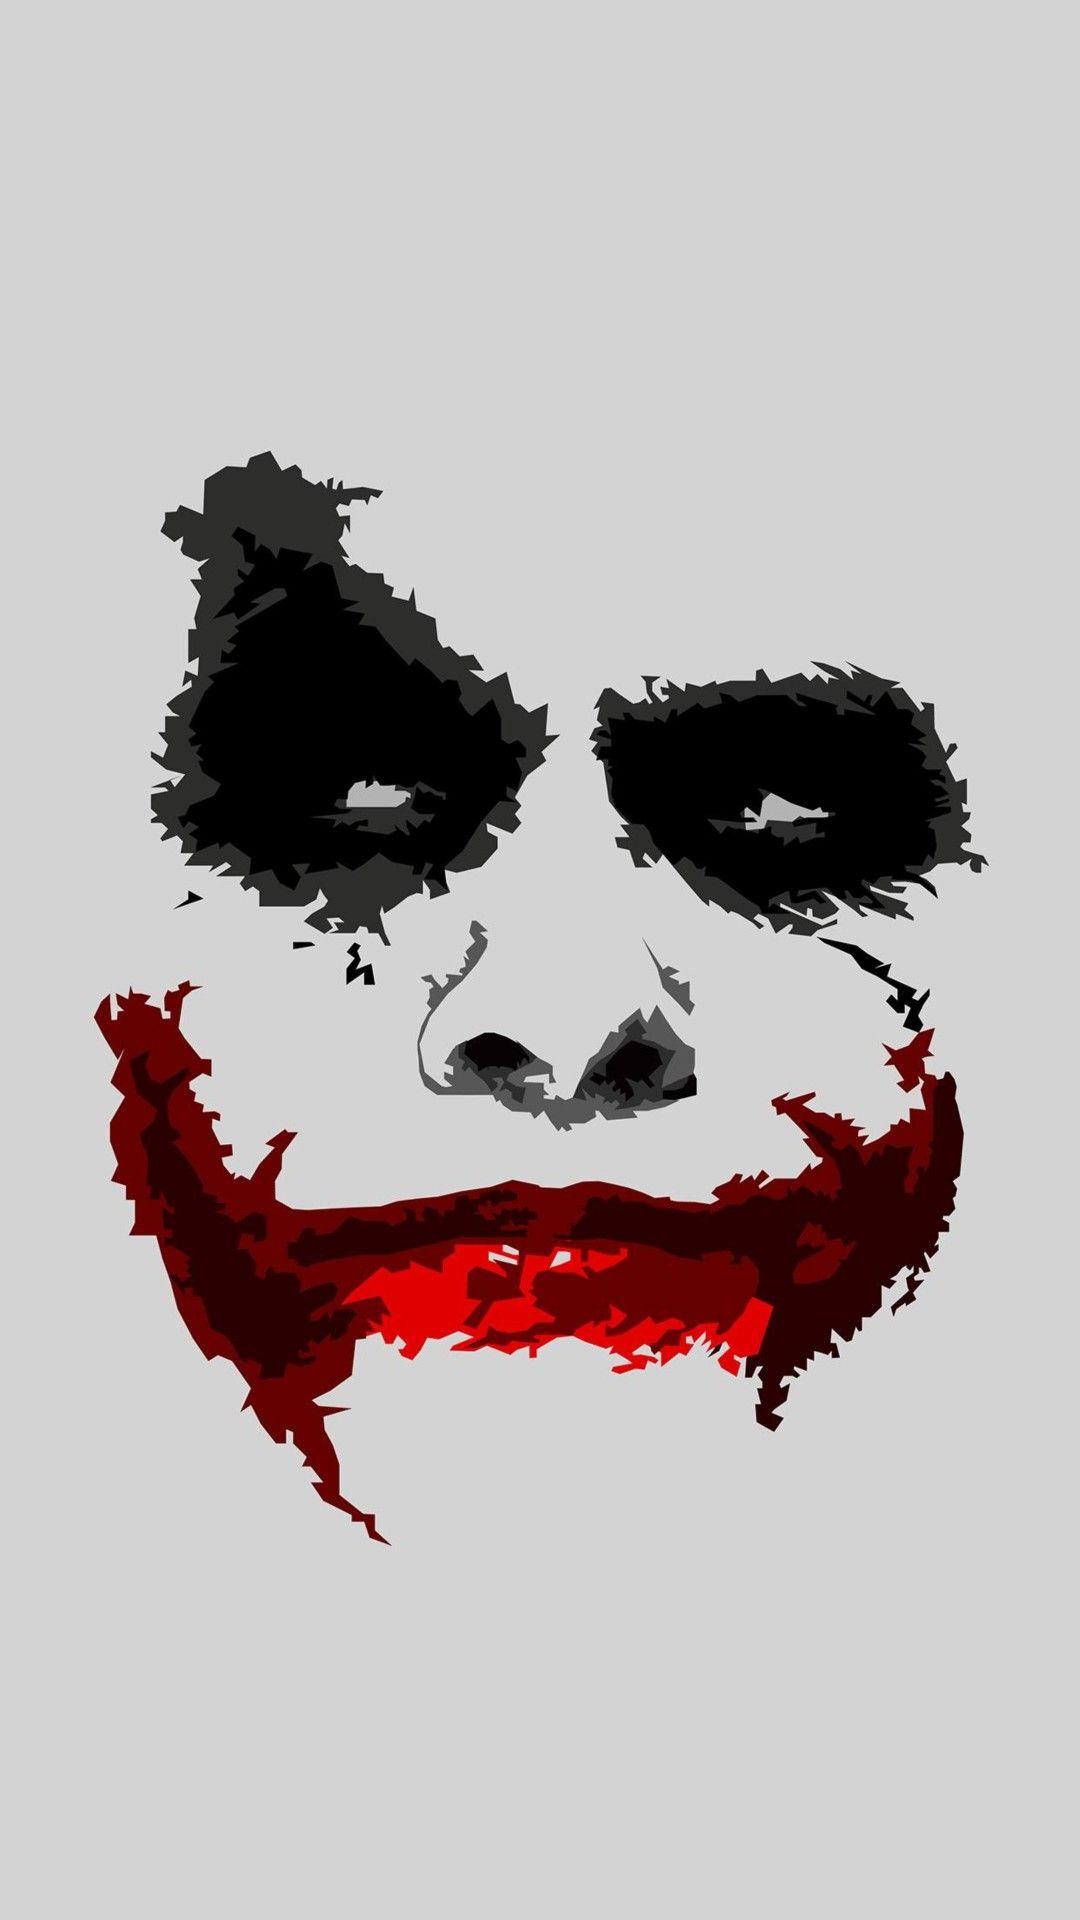 Joker Art. Joker iphone wallpaper, Joker wallpaper, Joker face